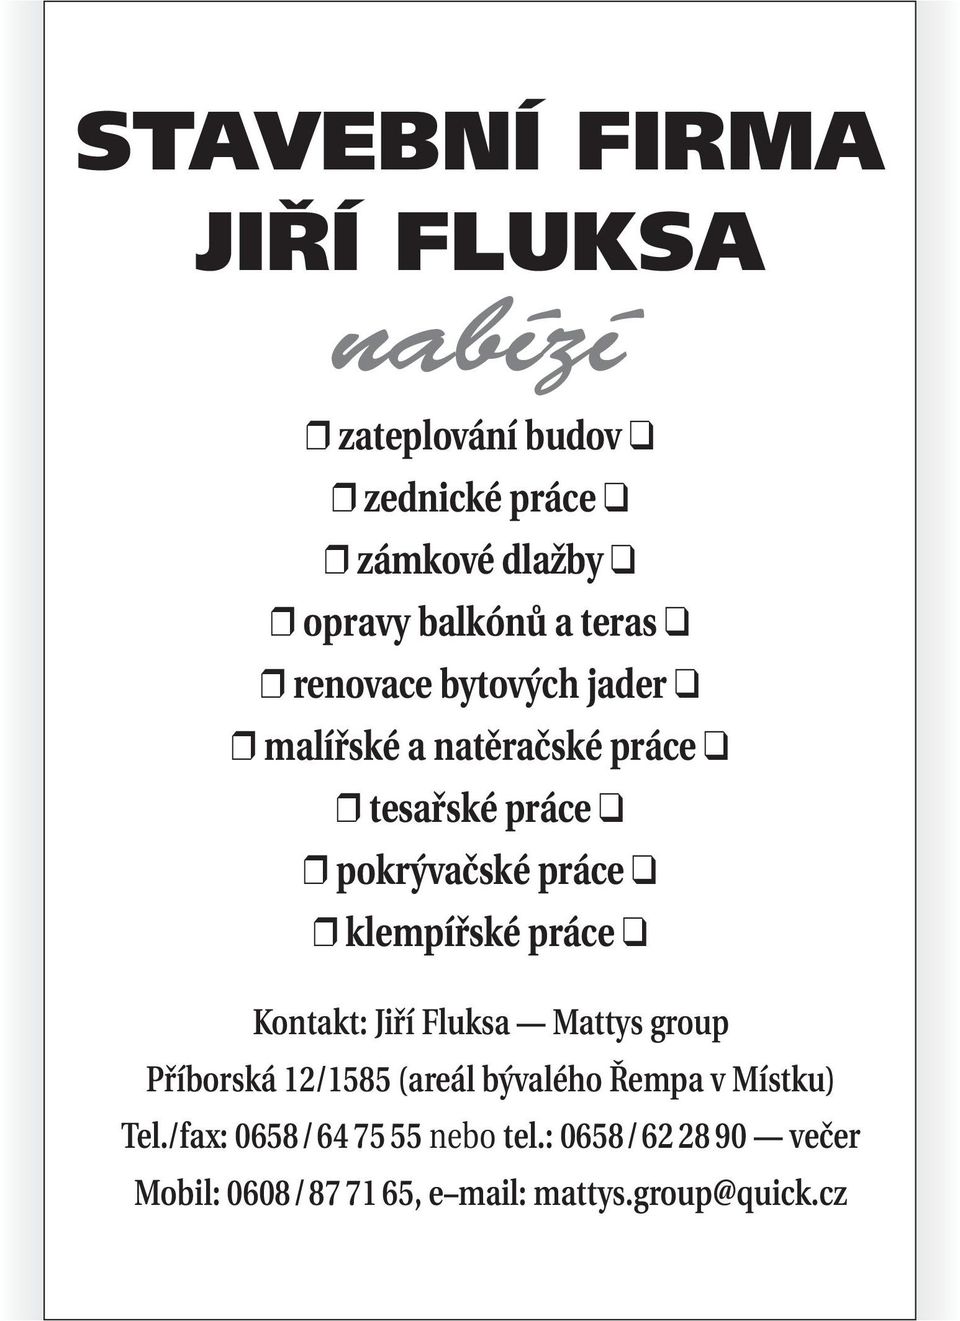 klempířské práce Kontakt: Jiří Fluksa Mattys group Příborská 12/1585 (areál bývalého Řempa v Místku)